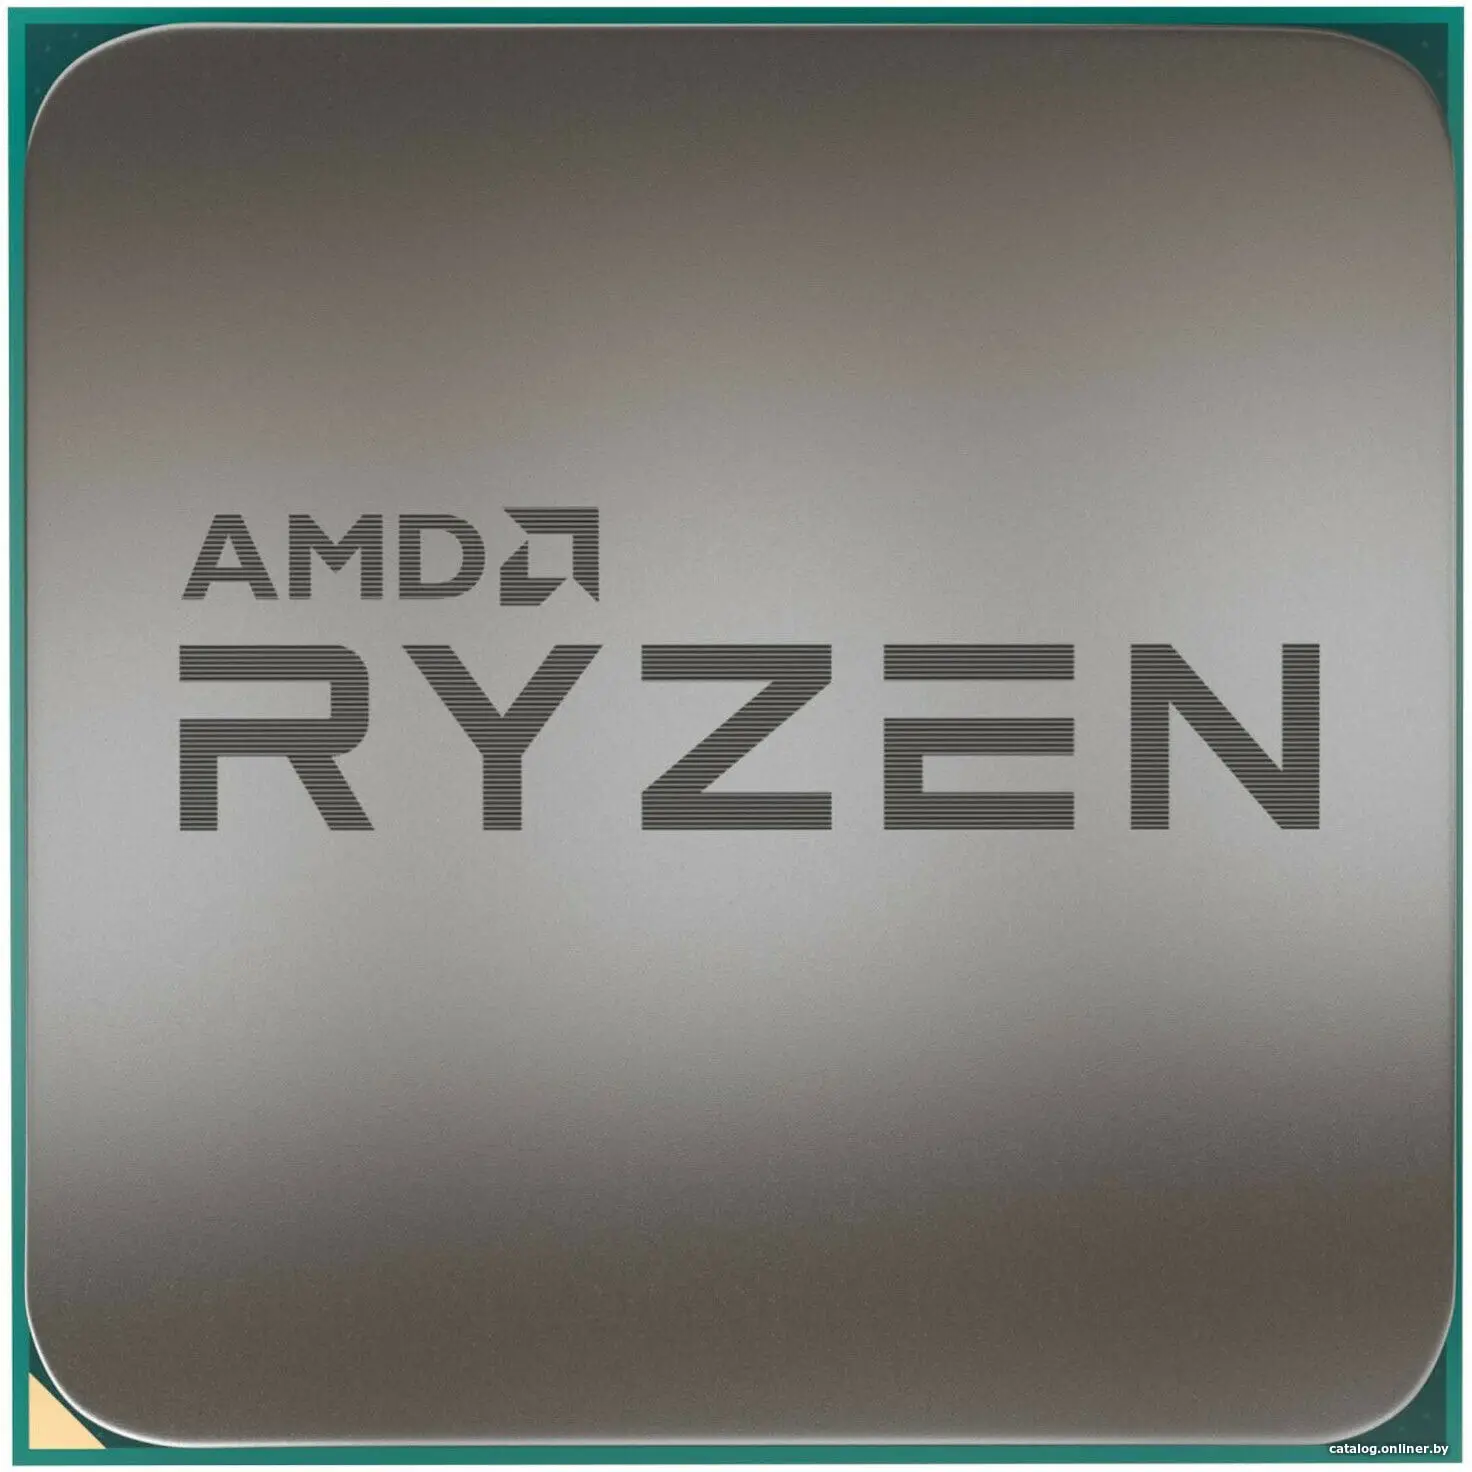 Купить Процессор AMD Ryzen 5 5600G, цена, опт и розница